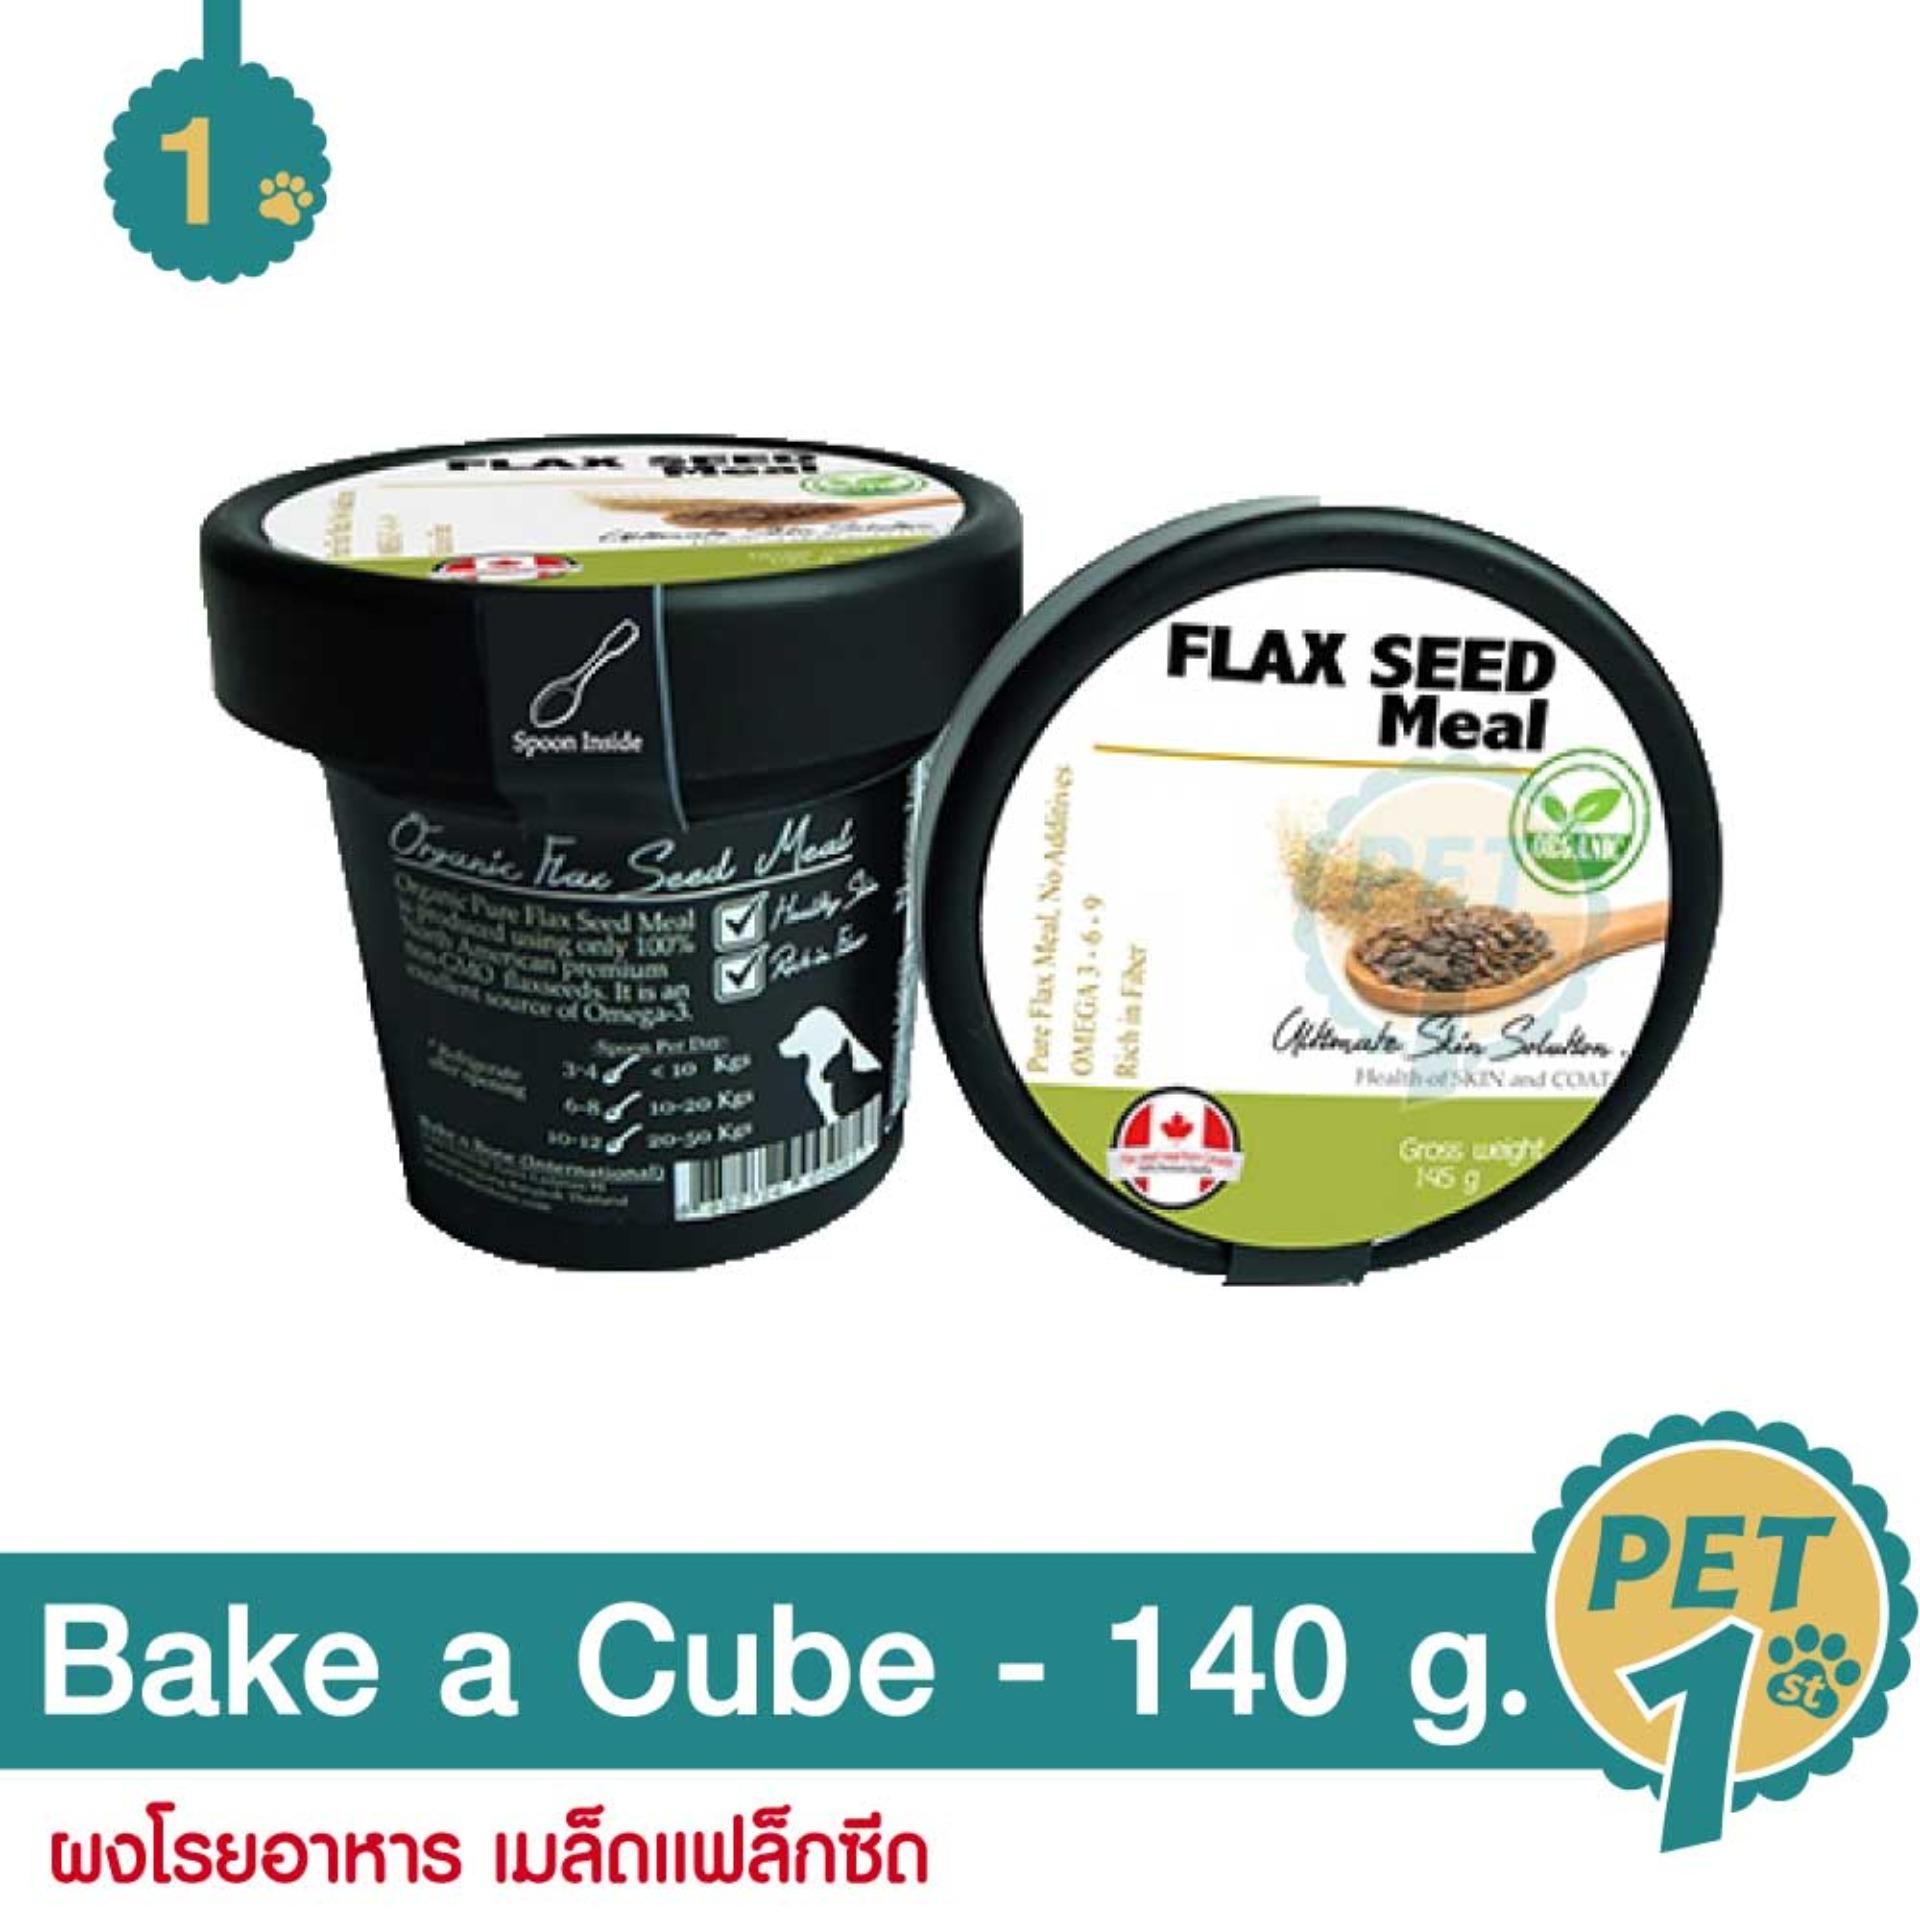 Bake n Bone Flax Seed Meal 140 g. ผงโรยอาหาร เมล็ดแฟล็กซีด สำหรับสุนัขและแมว 140 กรัม